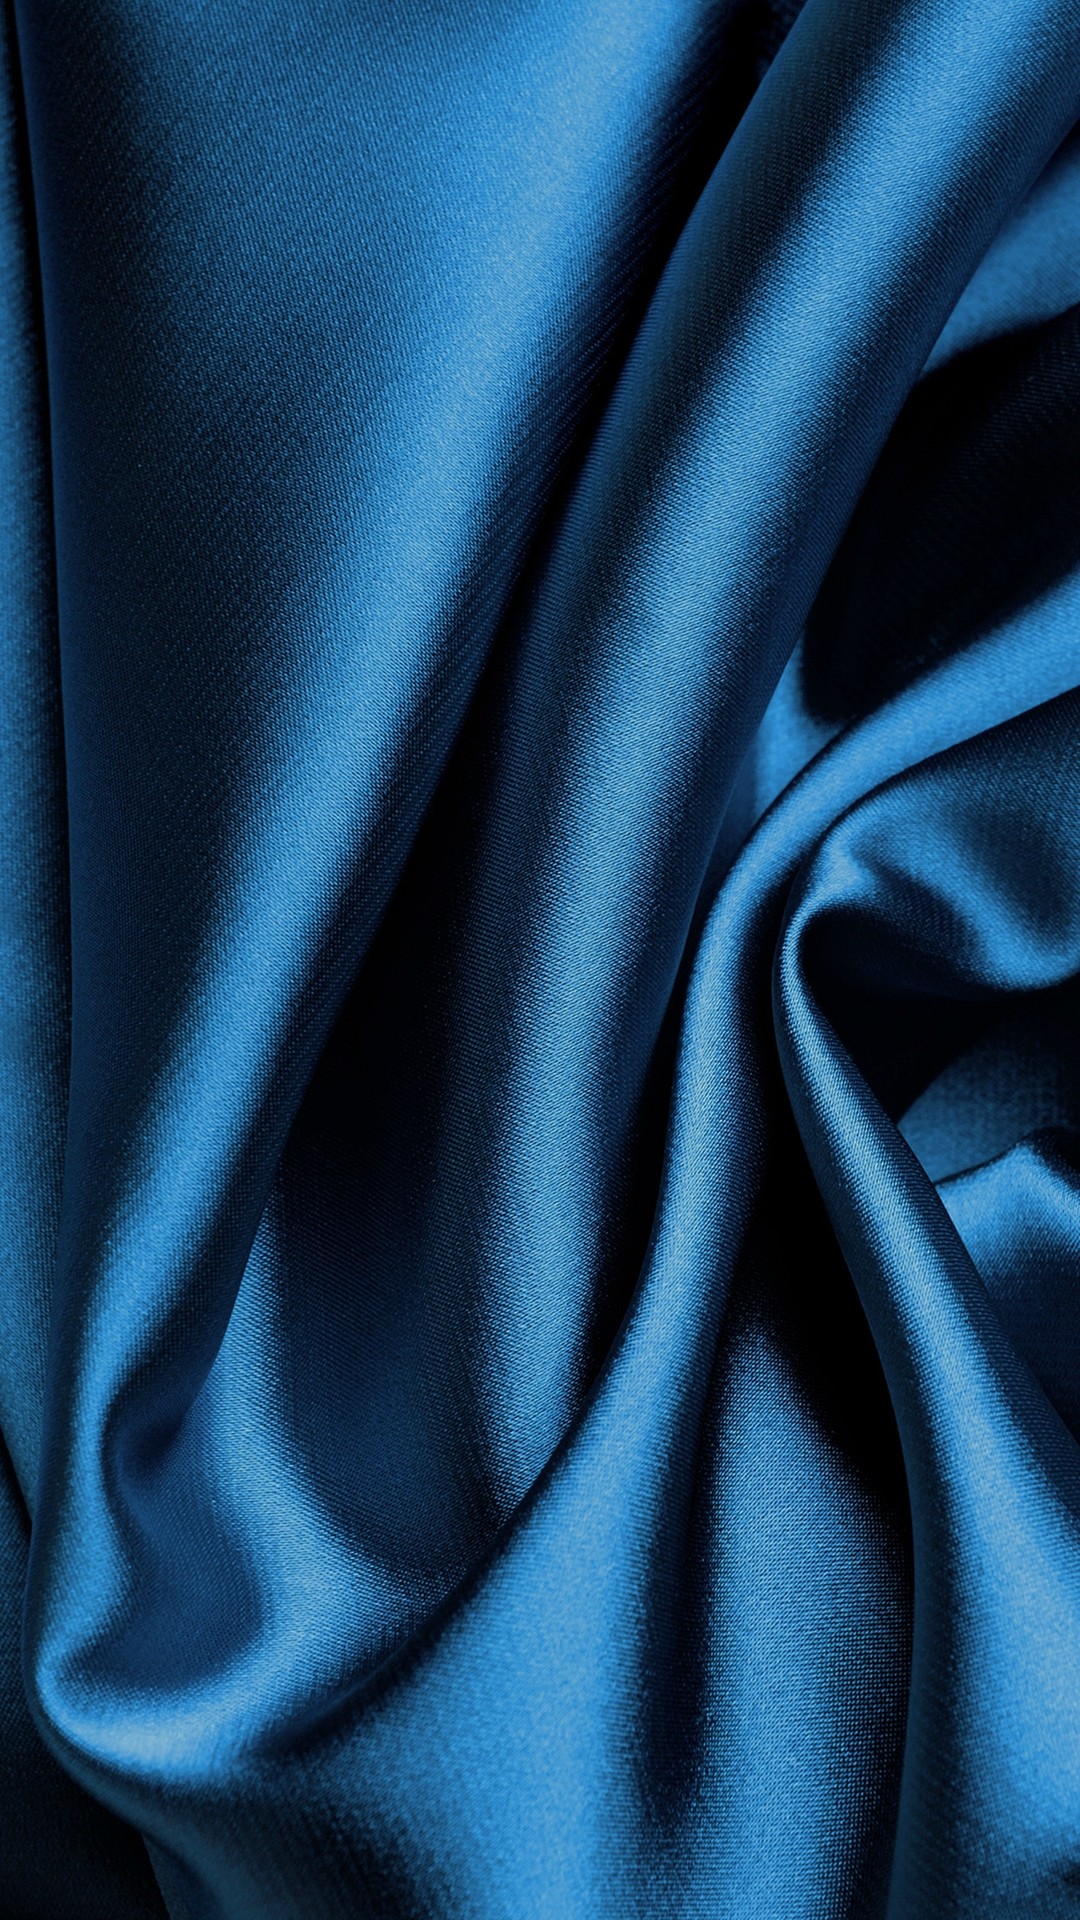 1080x1920 blue.quenalbertini: Blue Silk Fabric Texture iPhone 6 Wallpaper